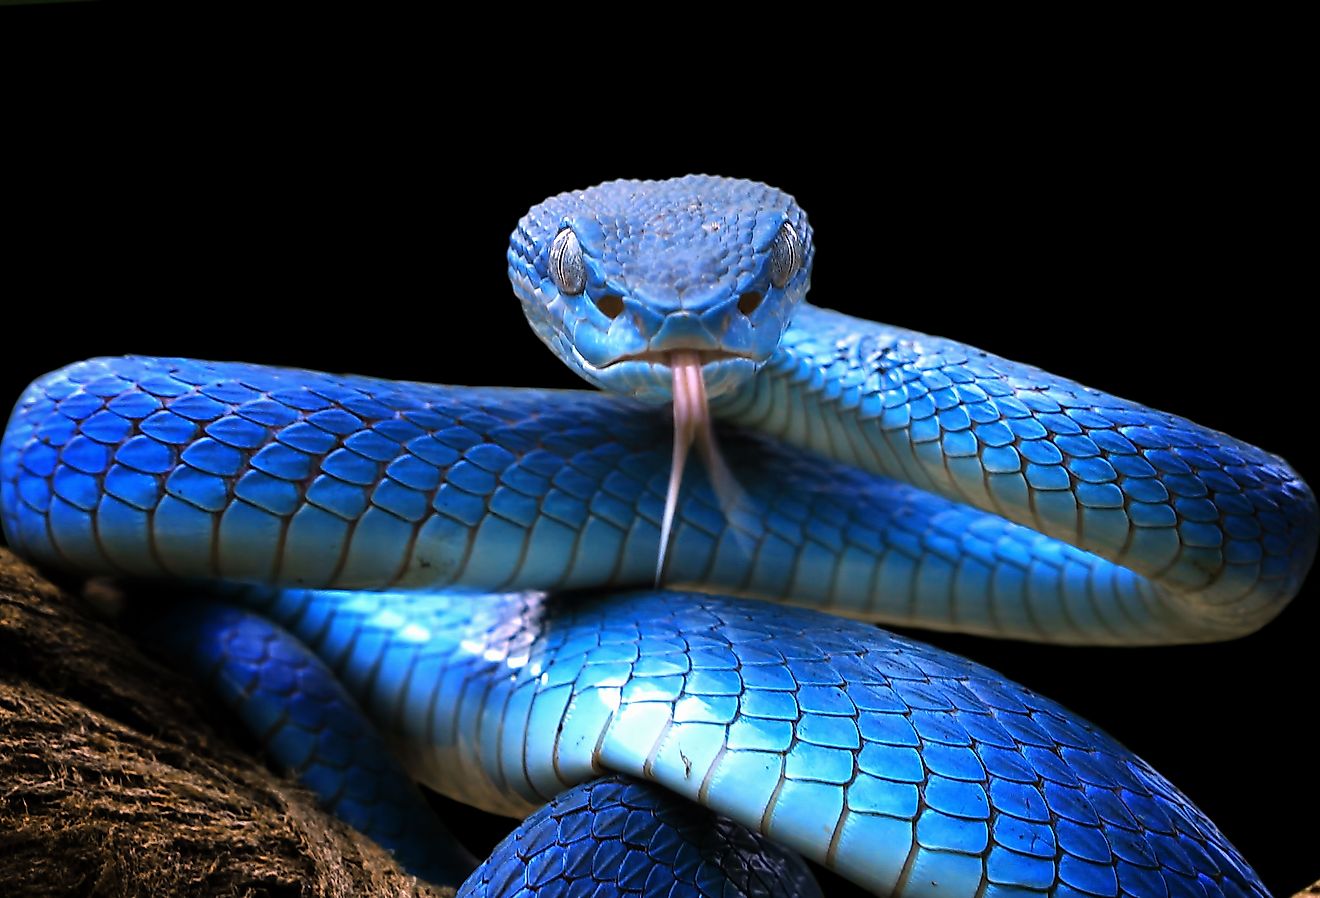 Blue Snake Pictures  Download Free Images on Unsplash